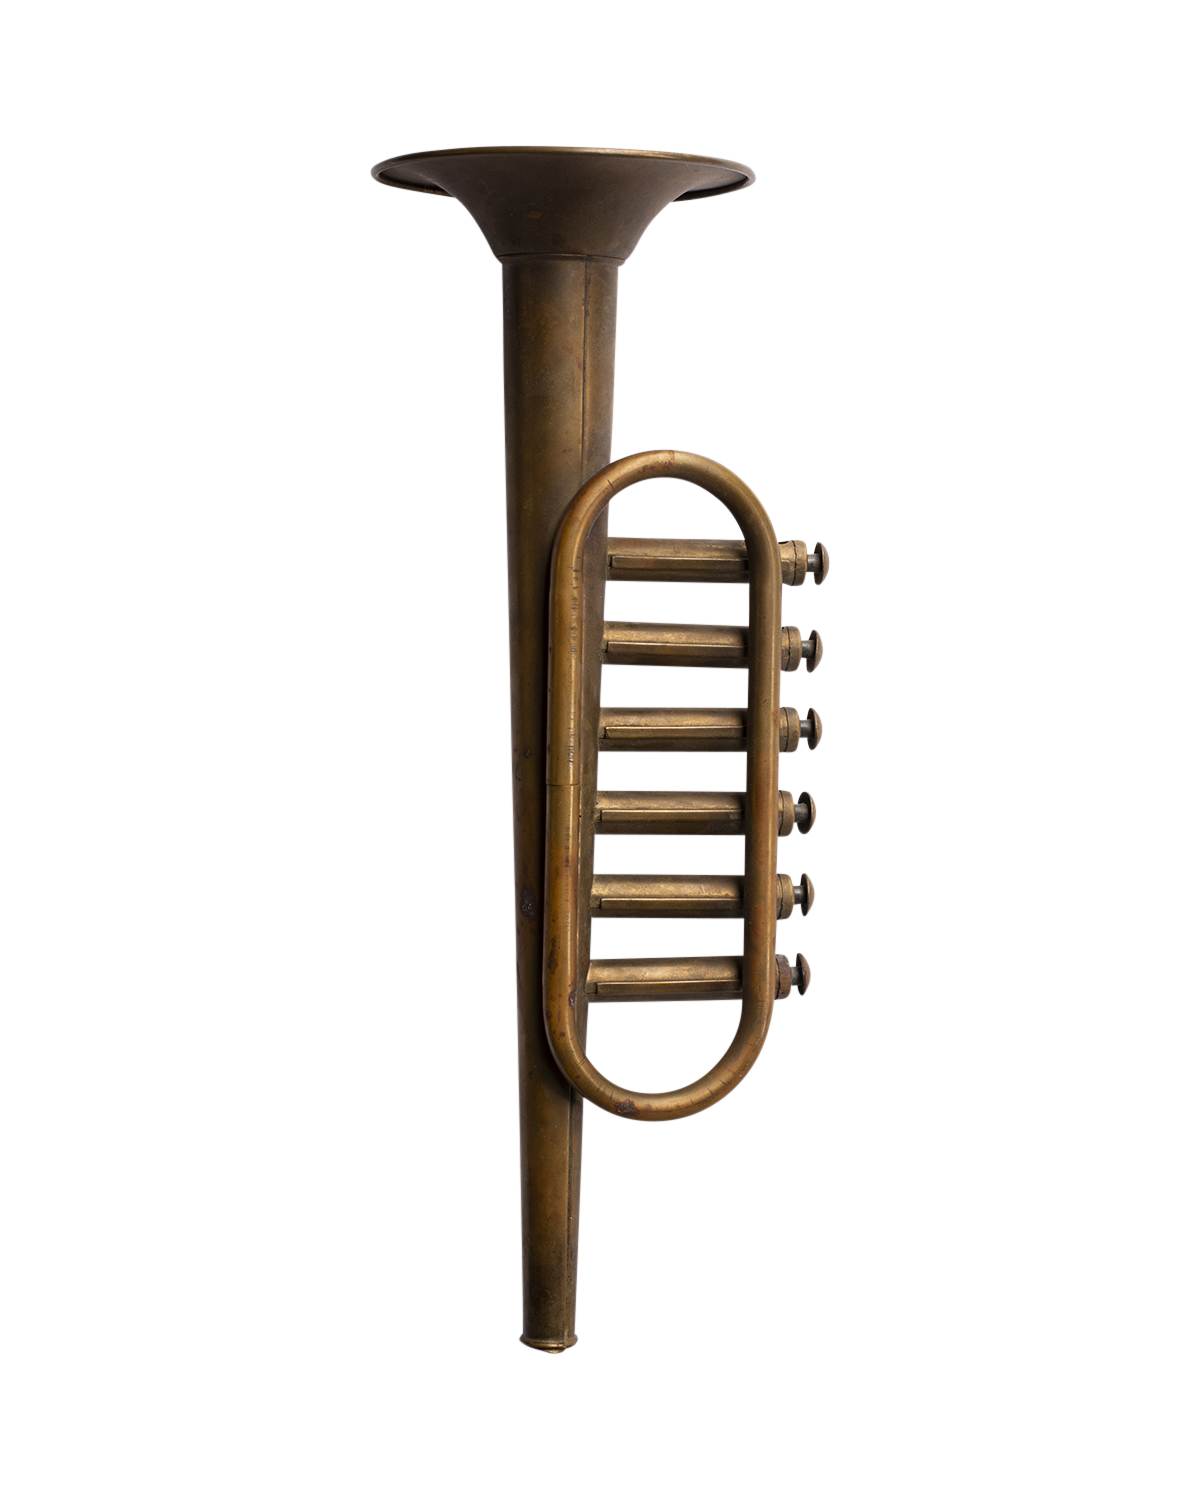 1940s Kids Toy Trumpet